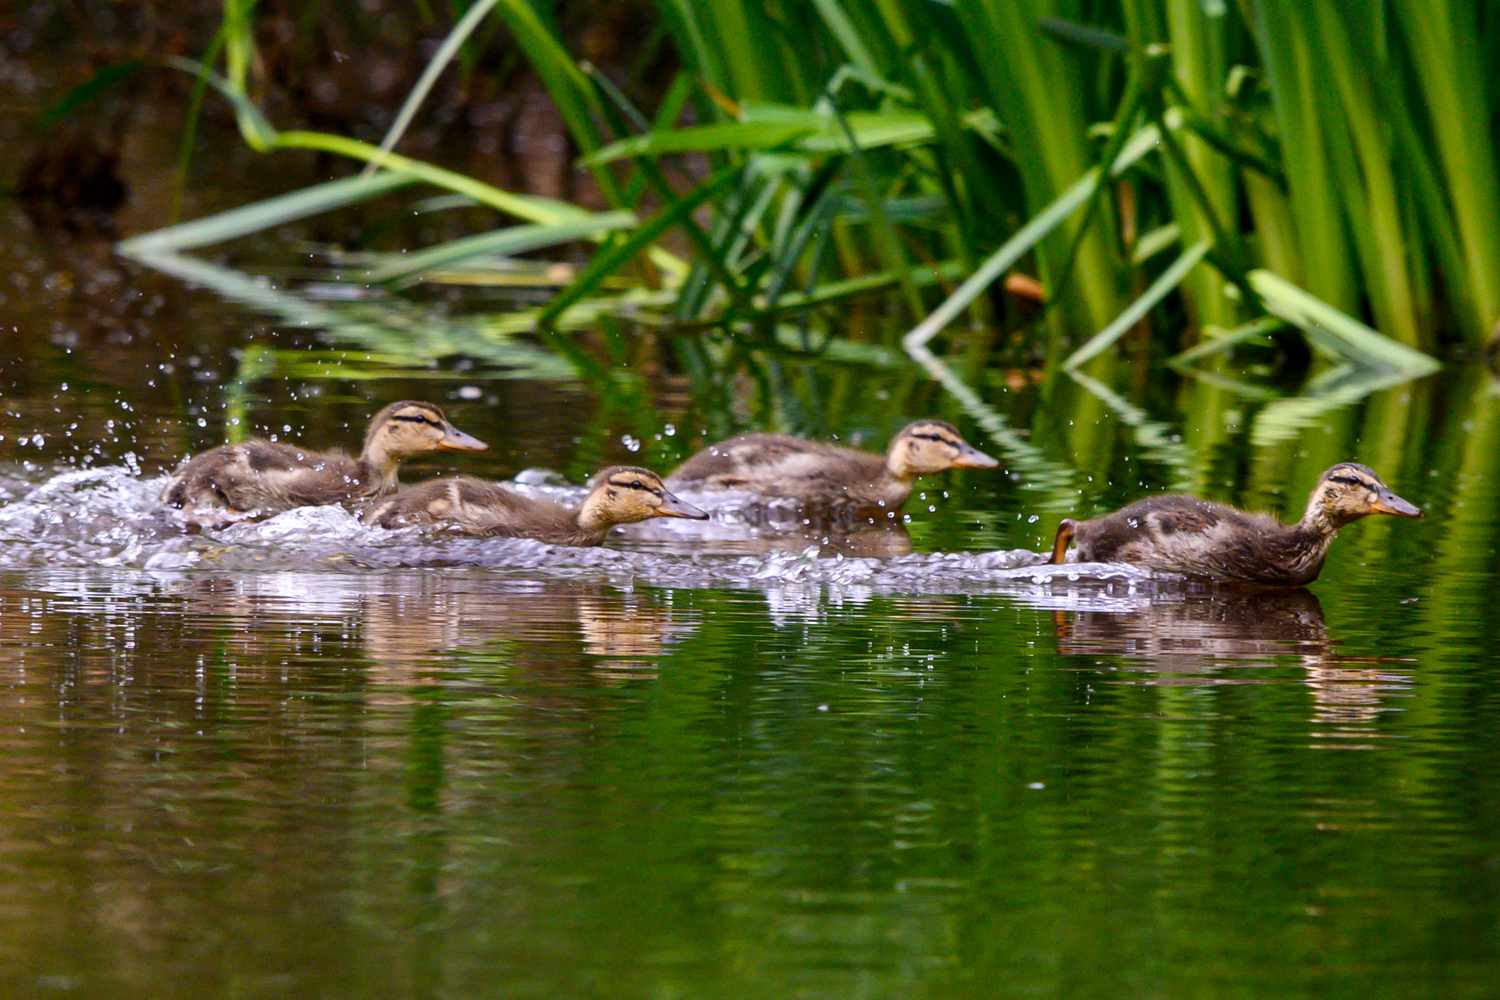 ducklings splashing through the water